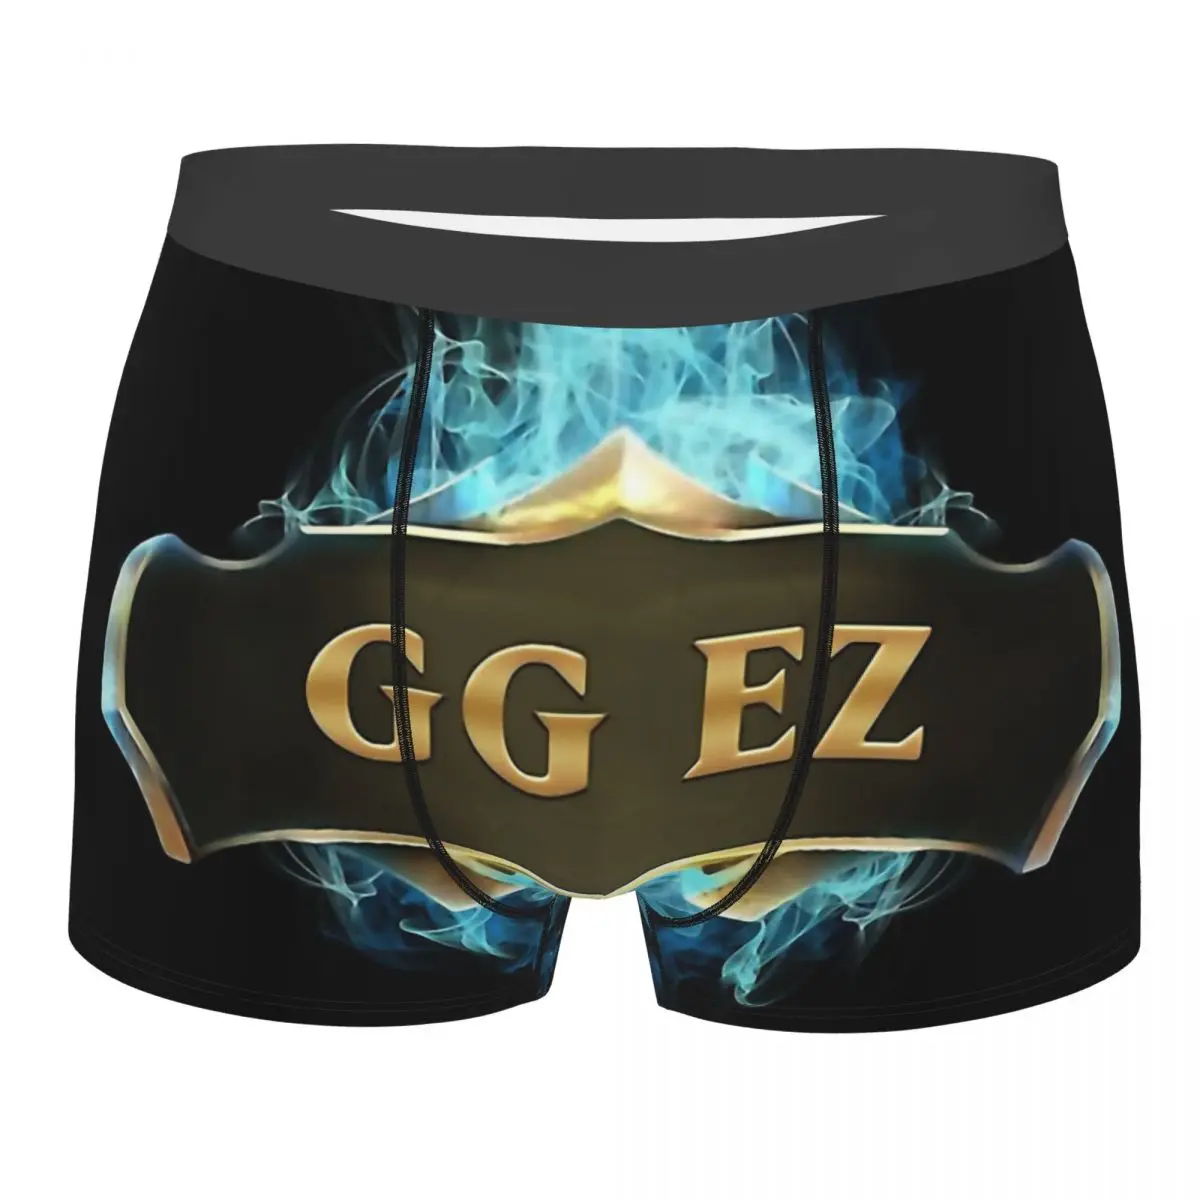 Трусы GG EZ League Of Legends мужские хлопковые нижнее белье с принтом шорты-боксеры |